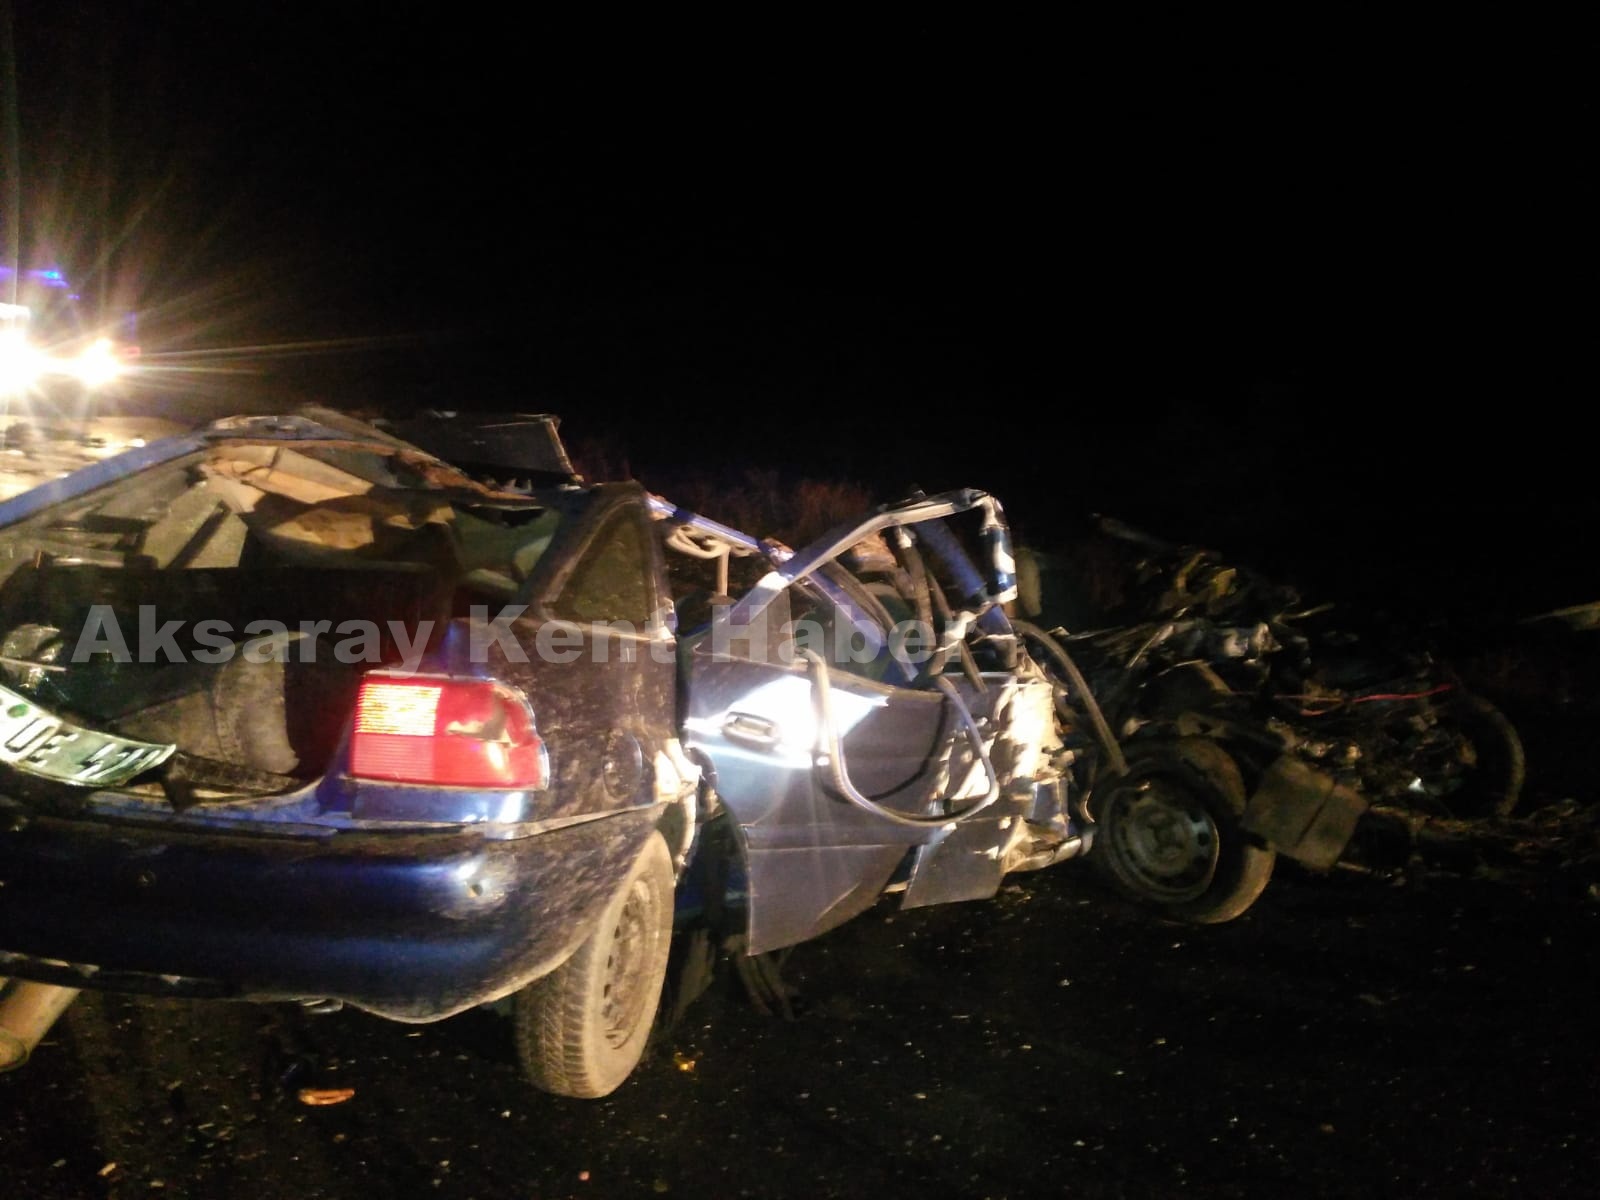 Aksaray da Trafik kazası Ölü Ve Yaralılar Var